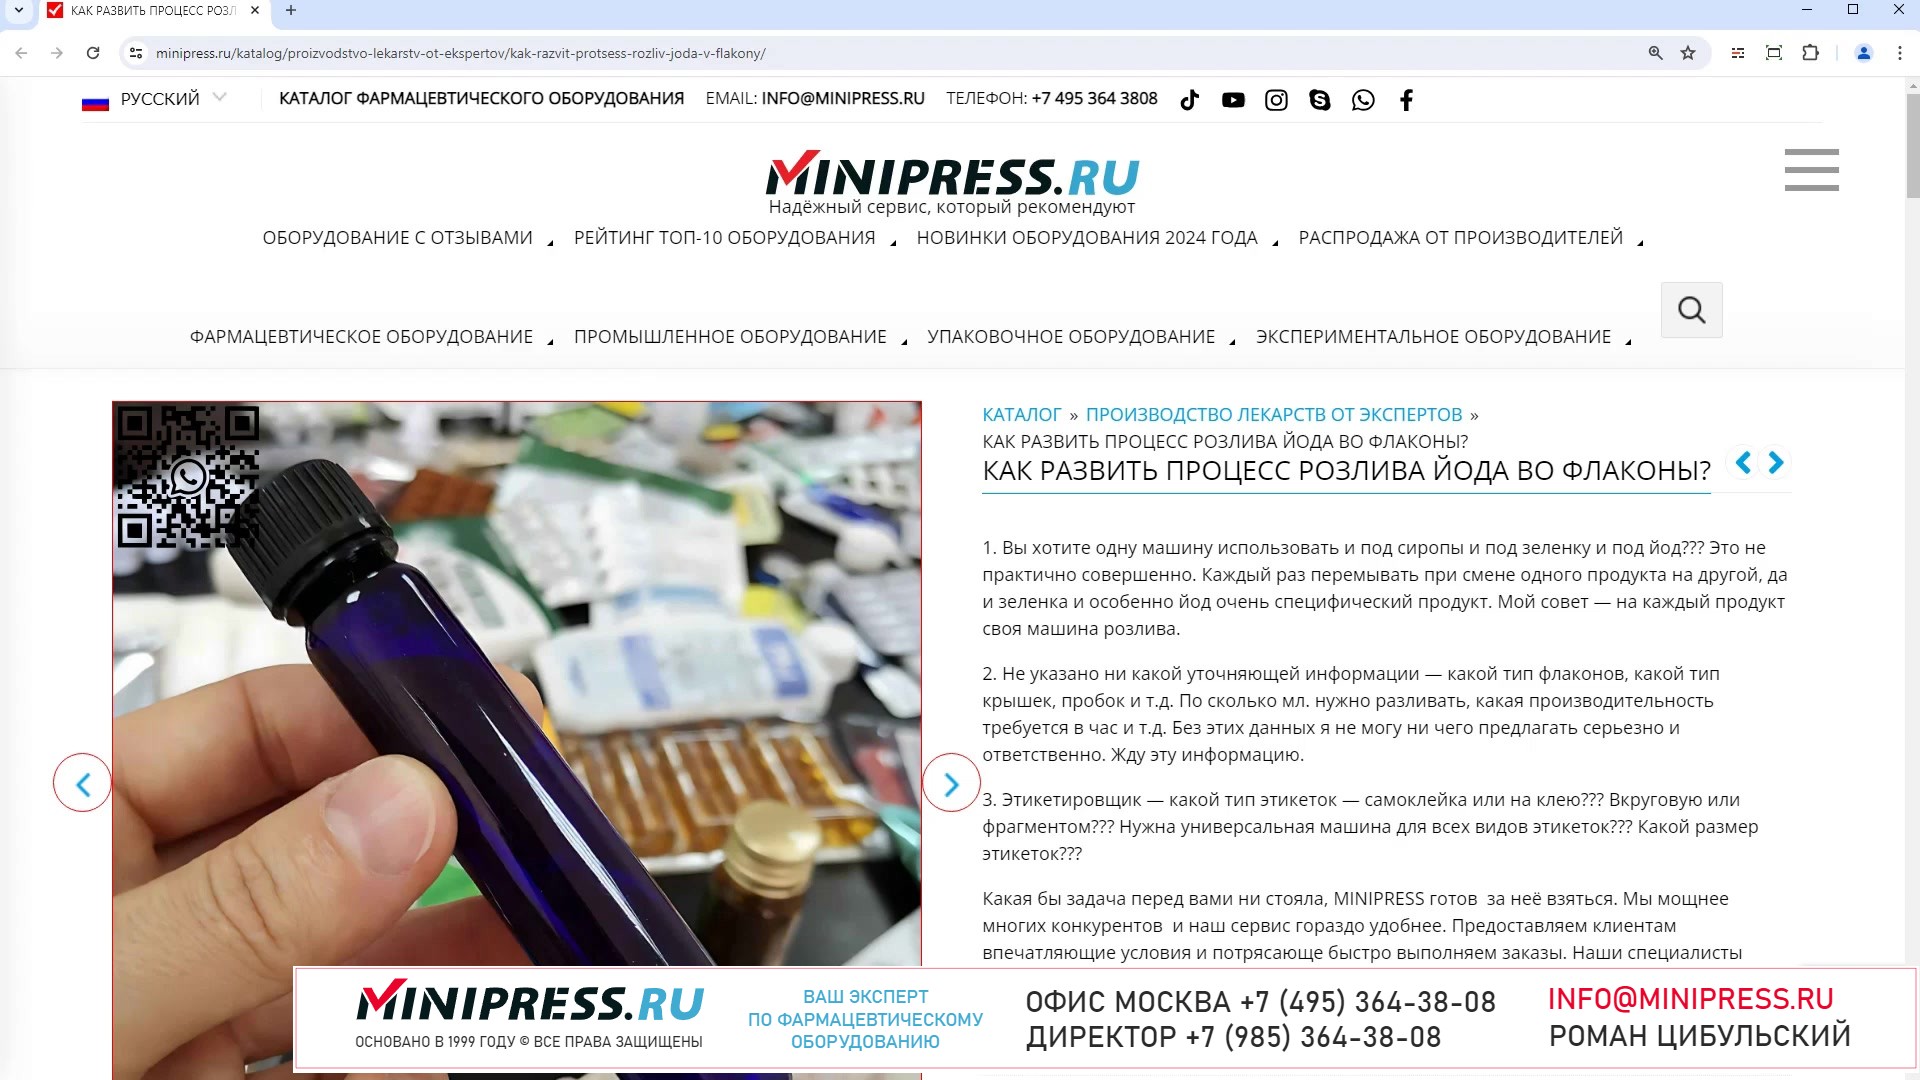 Minipress.ru Как развить процесс розлива йода во флаконы